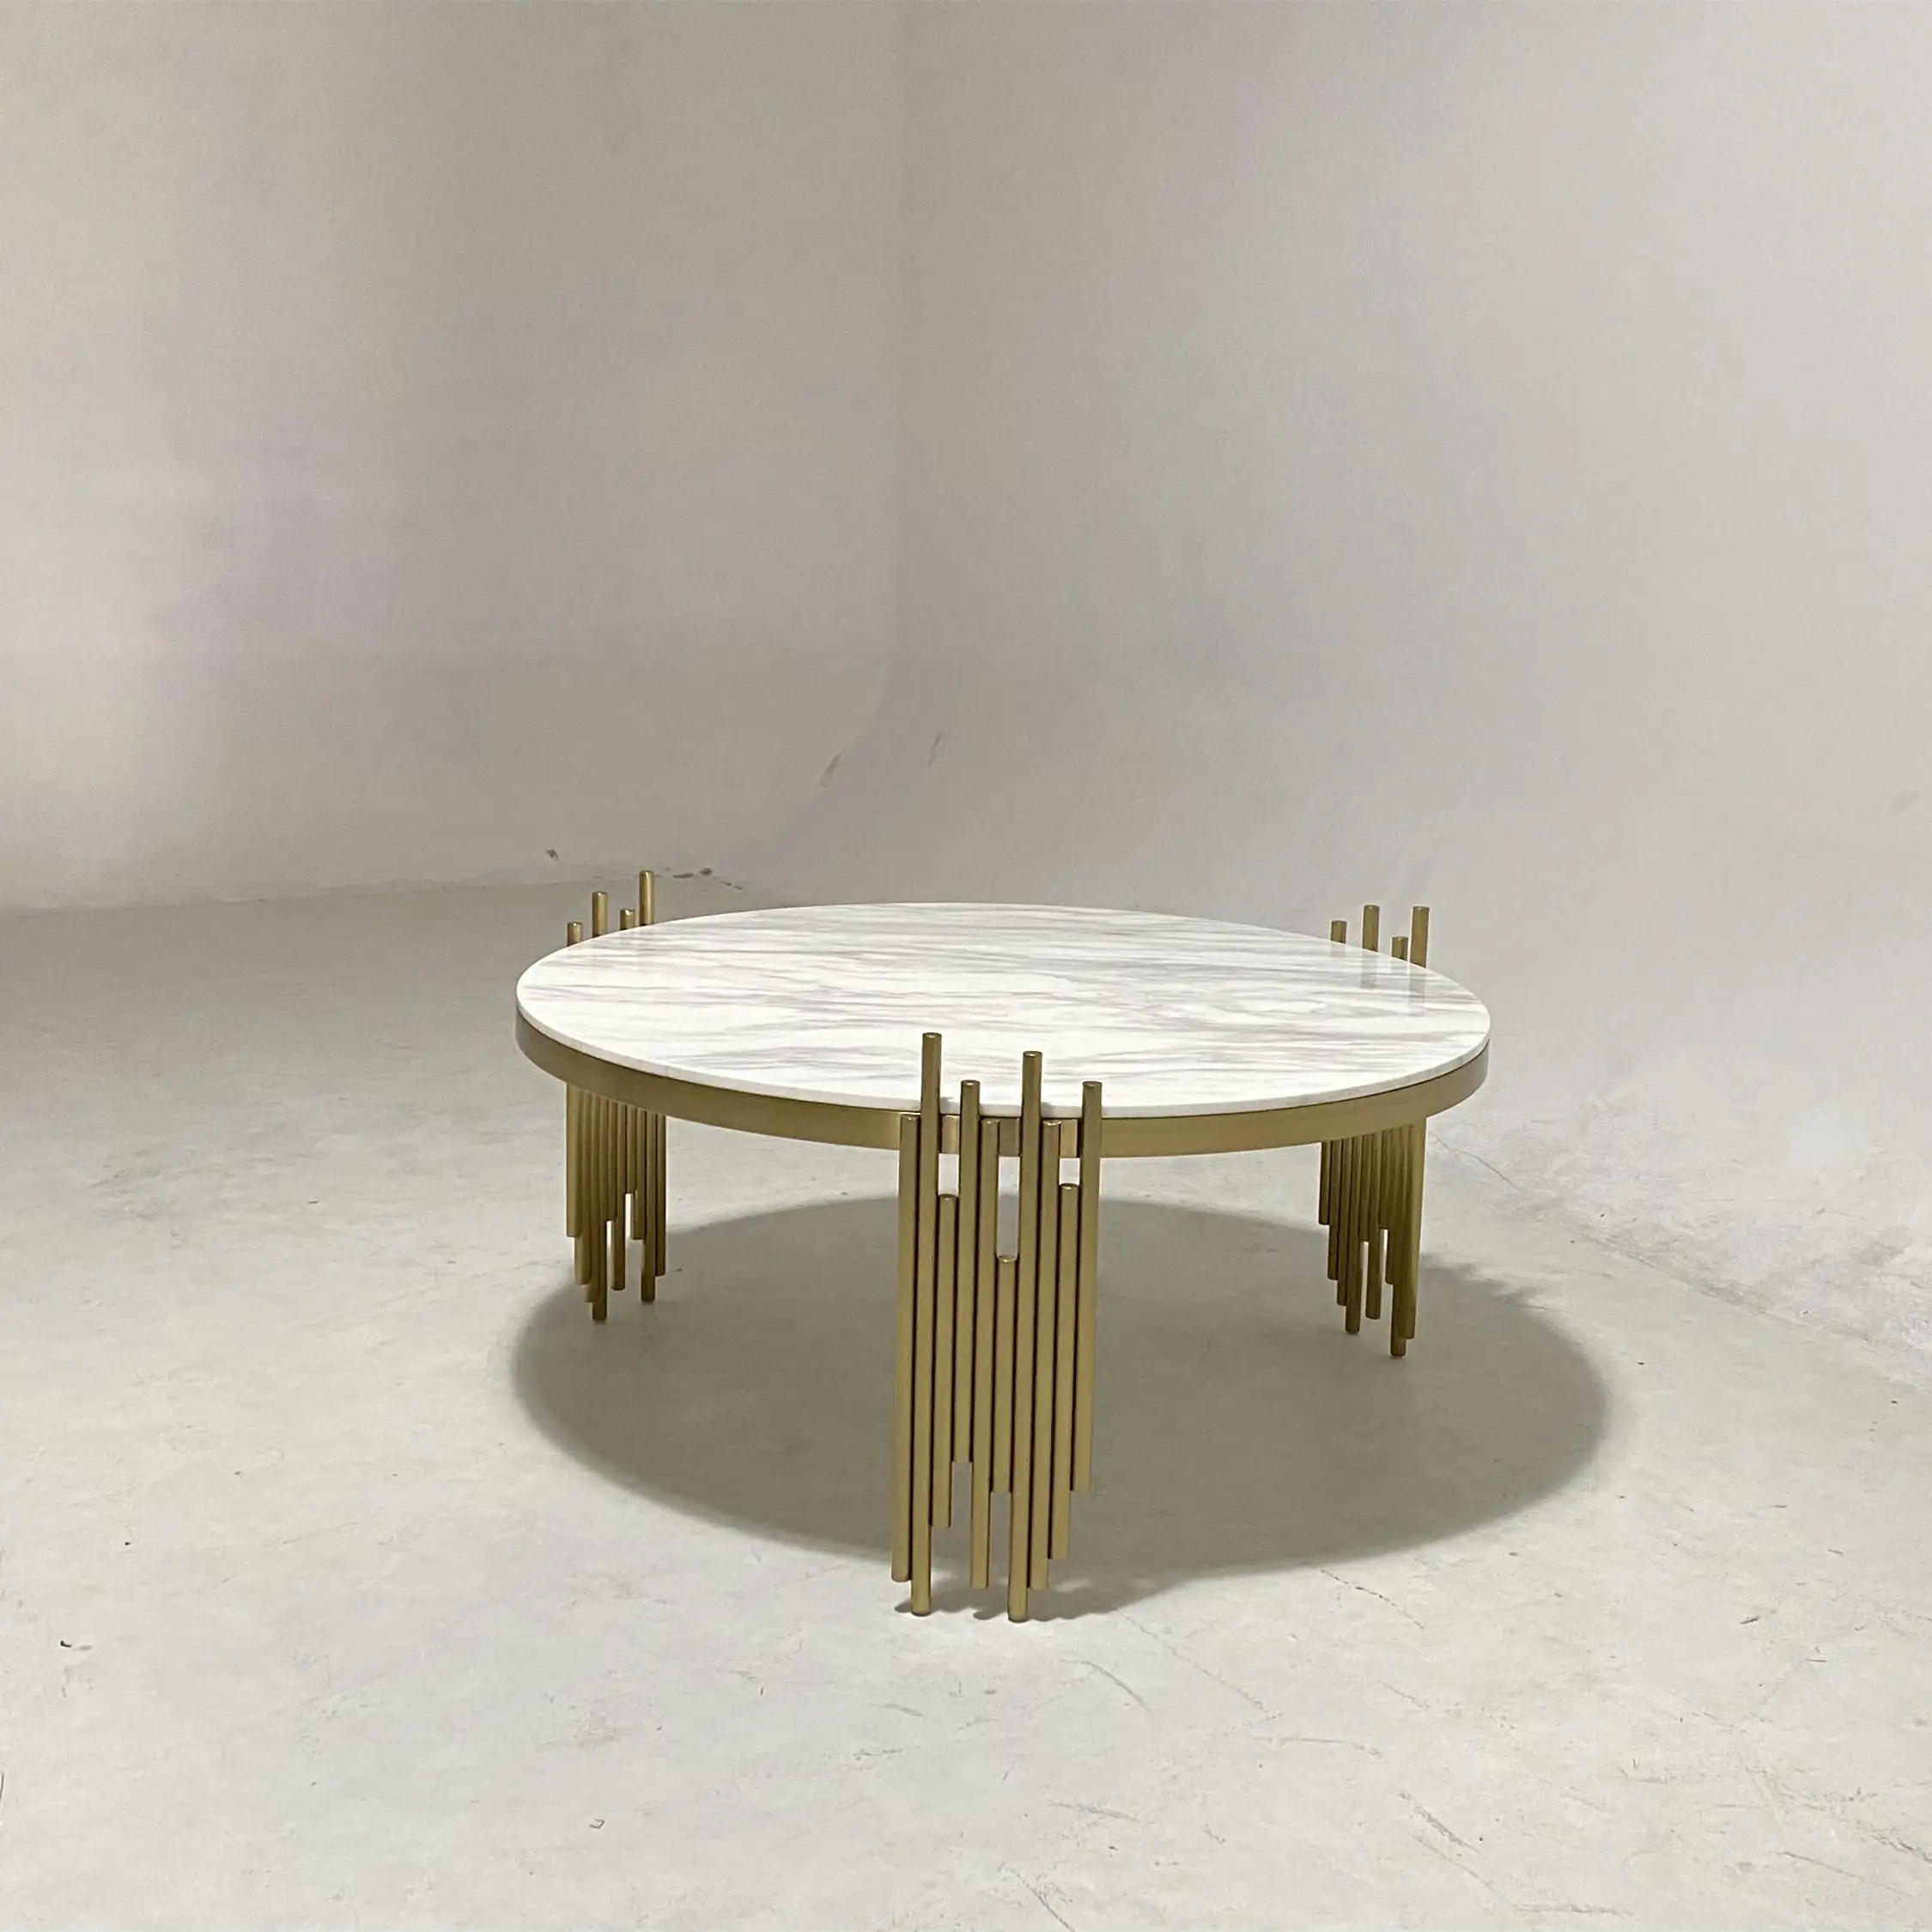 Alta qualità moderna di lusso su misura progetti mobili piano in marmo gamba in acciaio inox tavolino rotondo